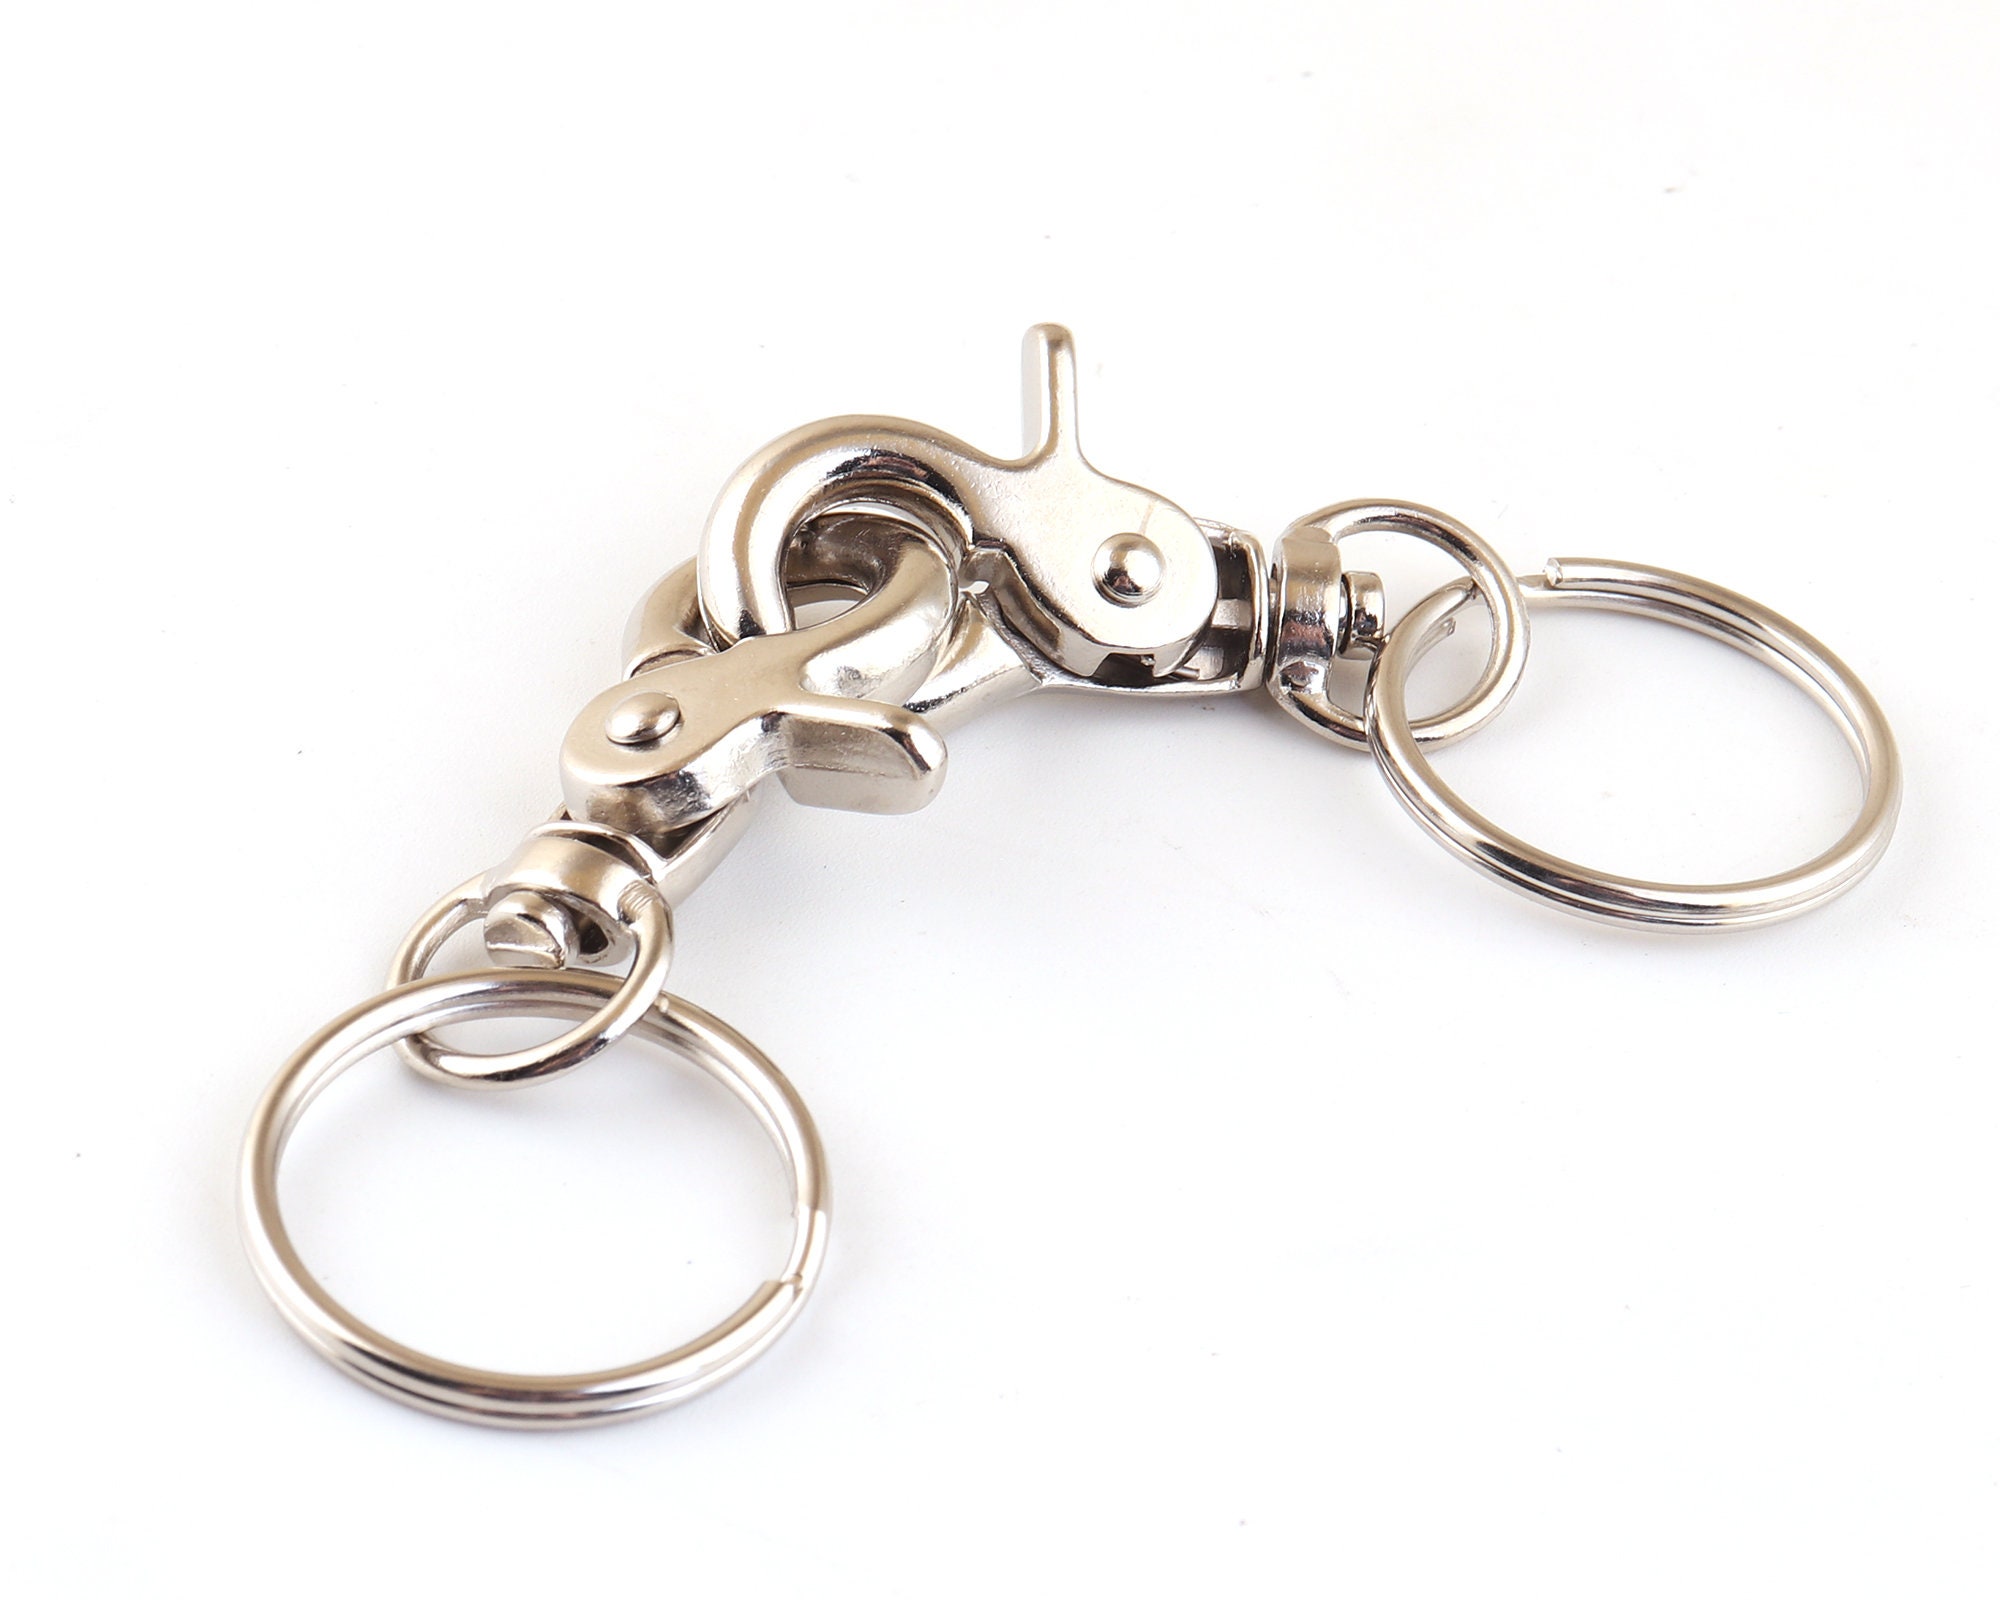 VILLCASE 3 Sets D Ring Clip Keychain Lobster Clasp Keychain Bulk Keychains  Swivel Hooks Bulk Key Rings Clip Hooks Swivel Keychain Key Rings Bulk to